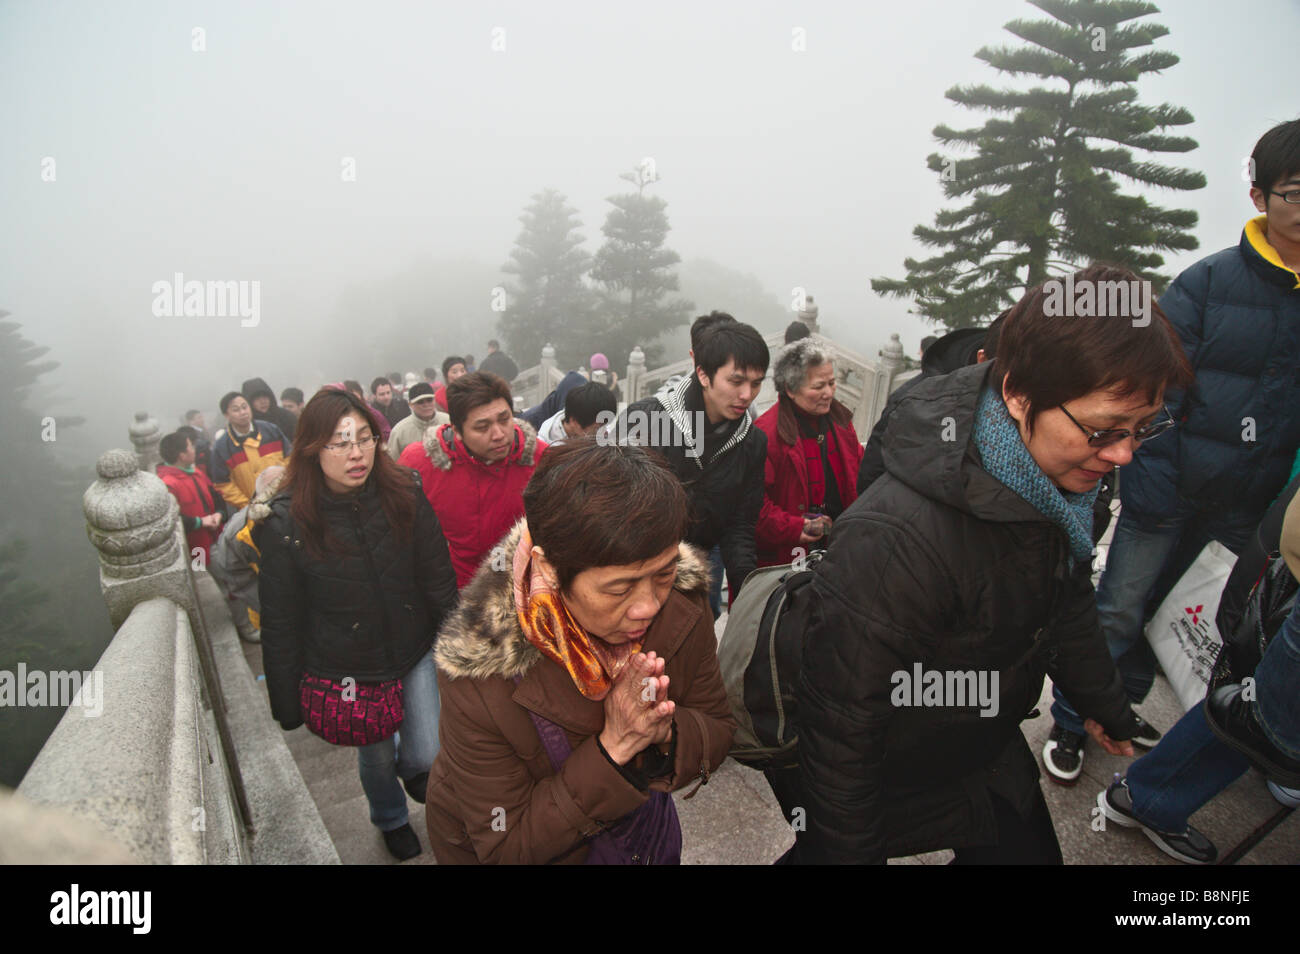 Les visiteurs de monter les 268 marches pour le Grand Bouddha de Lantau à Hong Kong a foggy premier jour de la nouvelle année lunaire 2009 Banque D'Images